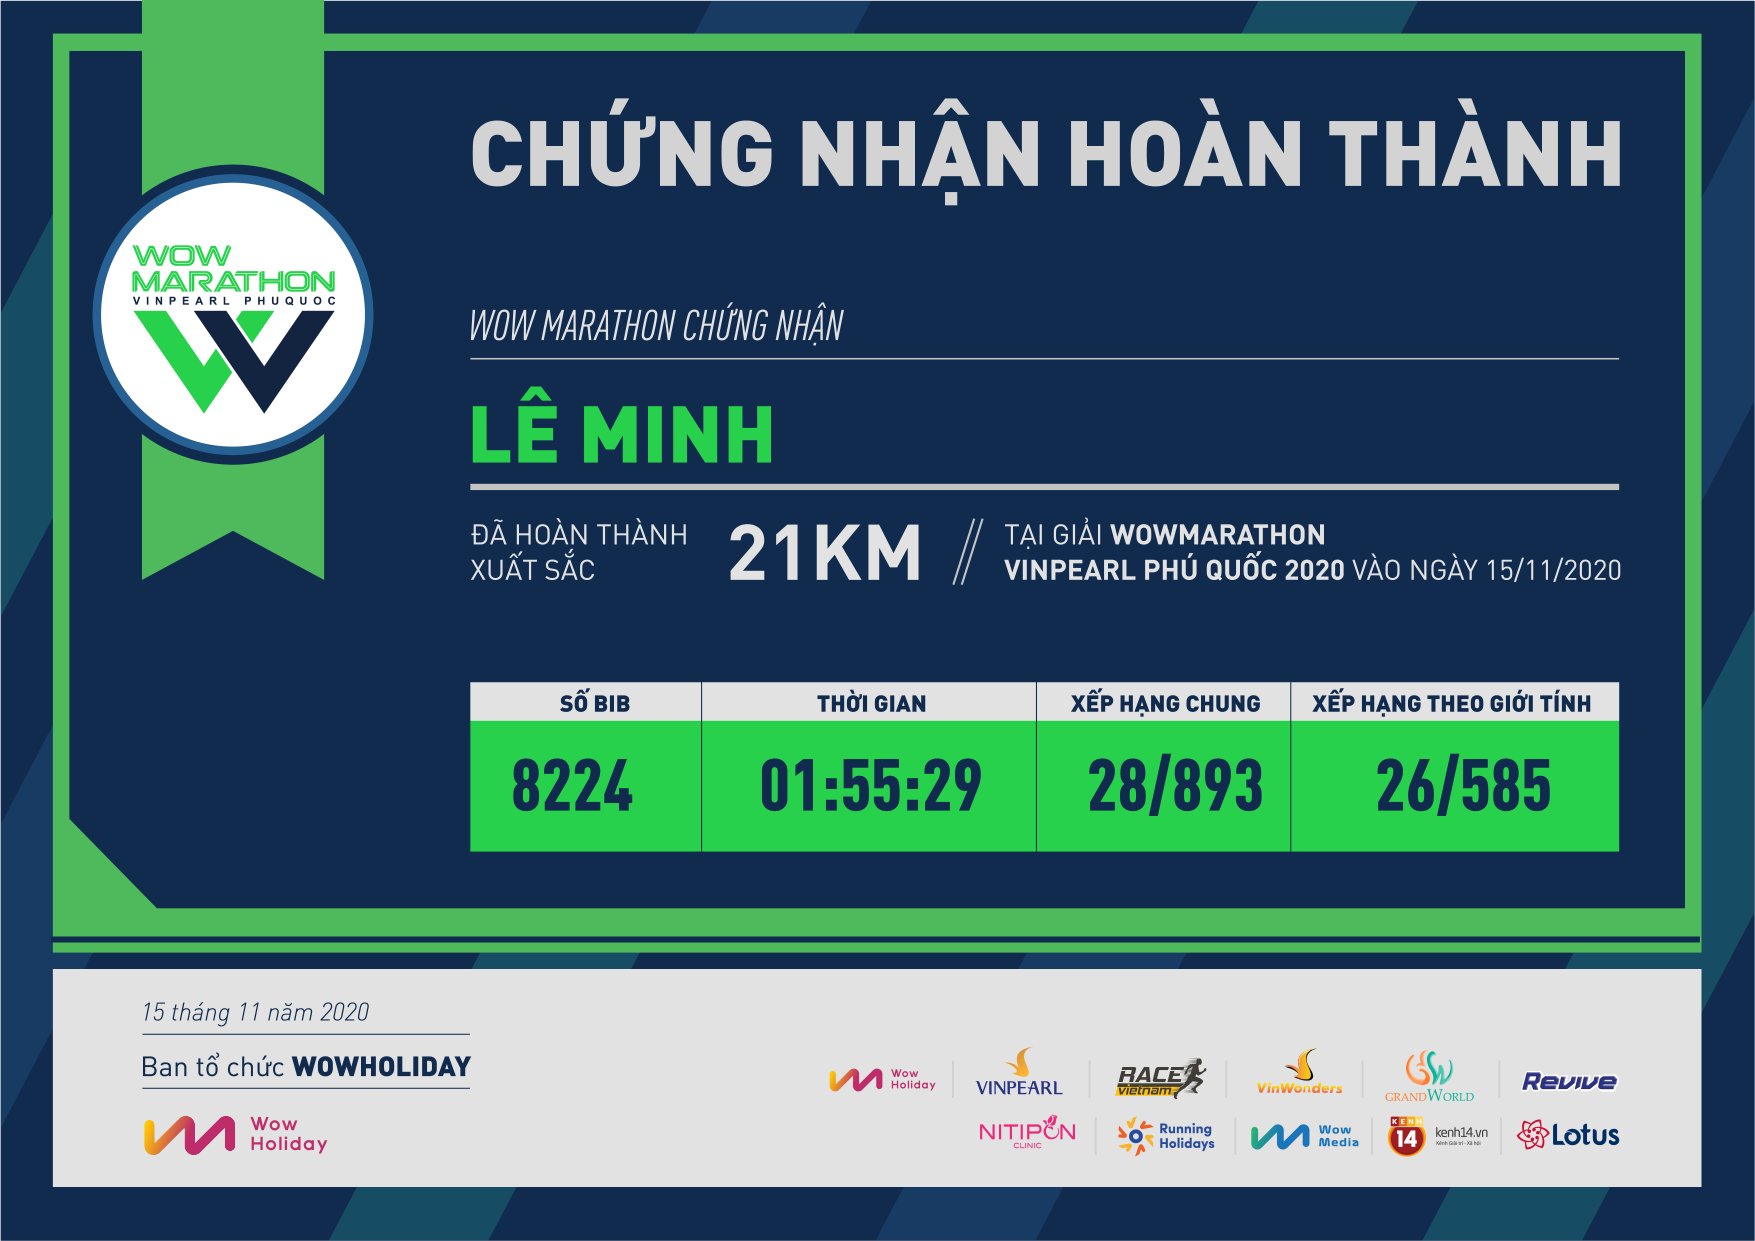 8224 - Lê Minh